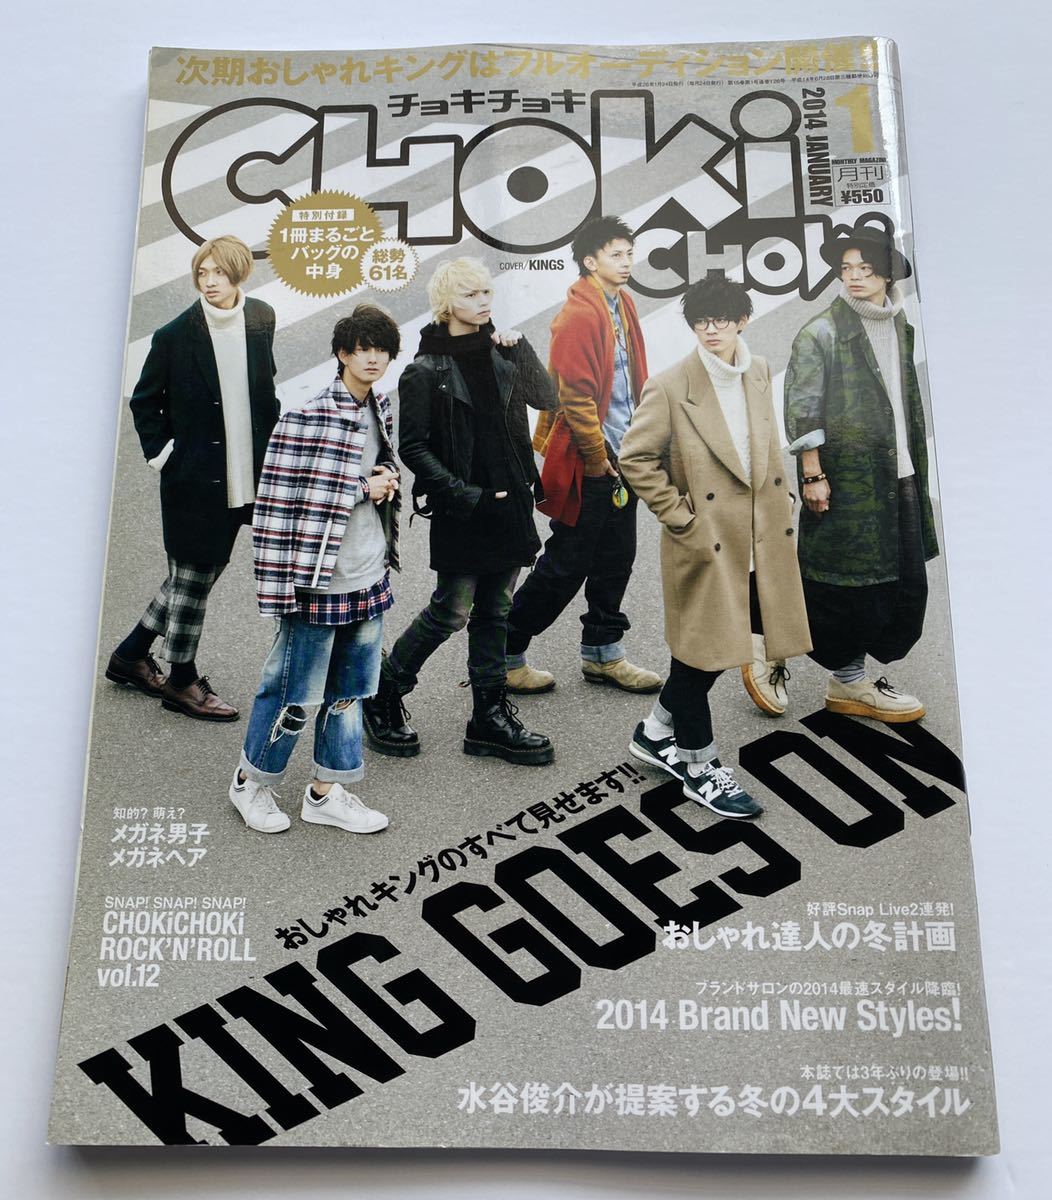 ファッション雑誌 Chokichoki チョキチョキ 14年 1月号 おしゃれキングのすべて見せます King Goes On 男性 売買されたオークション情報 Yahooの商品情報をアーカイブ公開 オークファン Aucfan Com